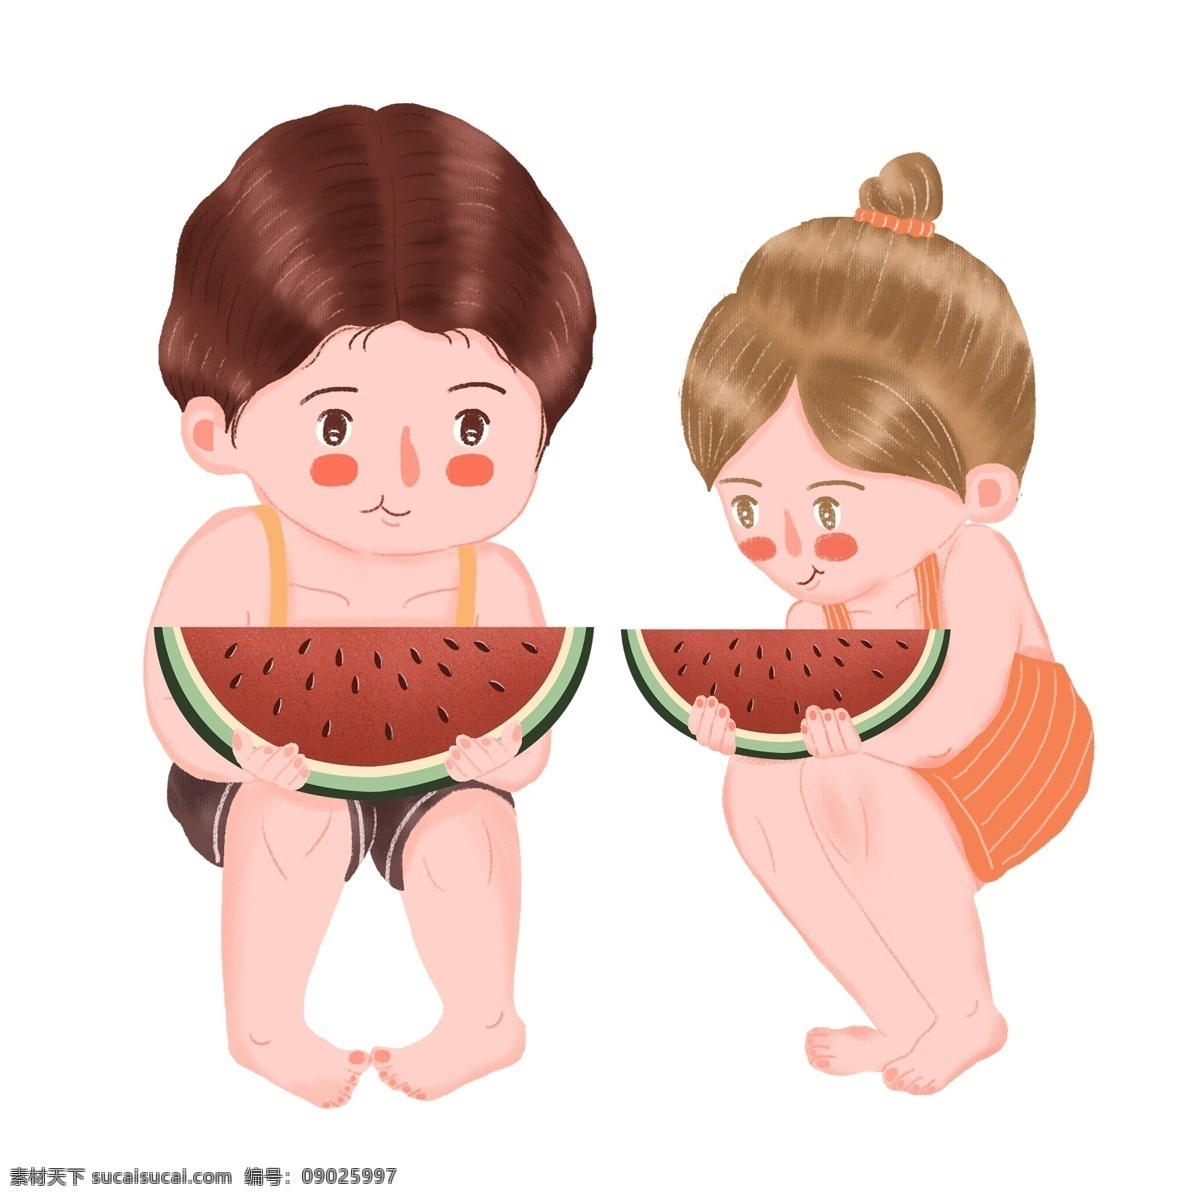 清凉 夏天 吃 西瓜 兄妹 俩 手绘 清凉夏季 卡通 吃西瓜 男孩 女孩 插画